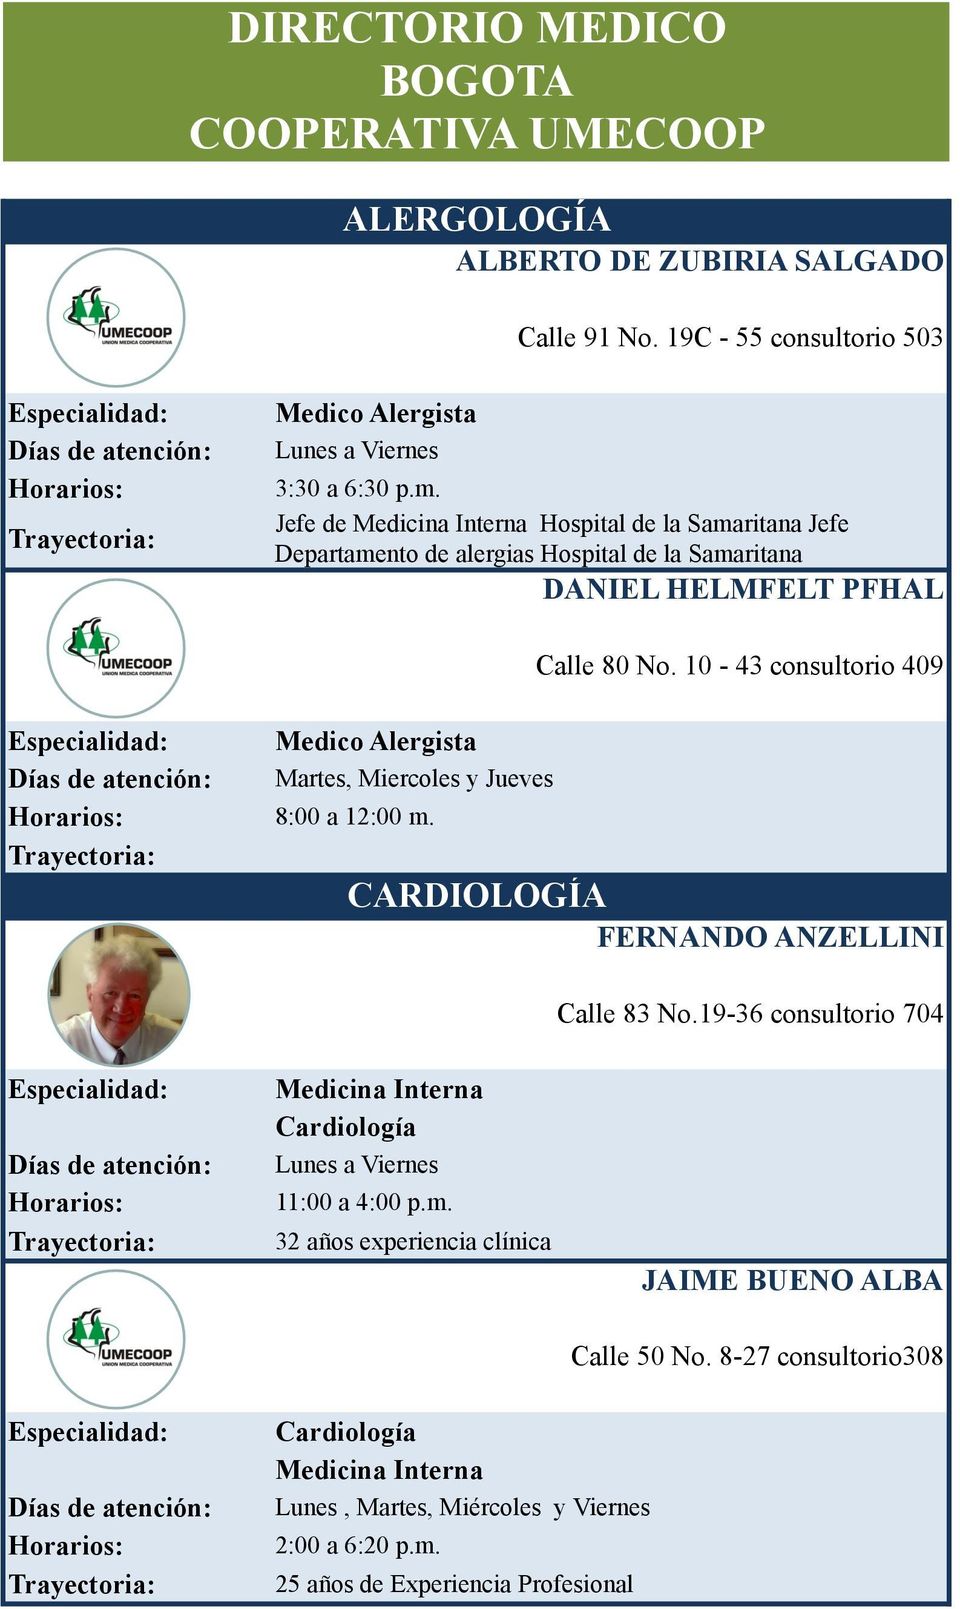 Medico Alergista Martes, Miercoles y Jueves Calle 80 No. 10-43 consultorio 409 CARDIOLOGÍA FERNANDO ANZELLINI Calle 83 No.